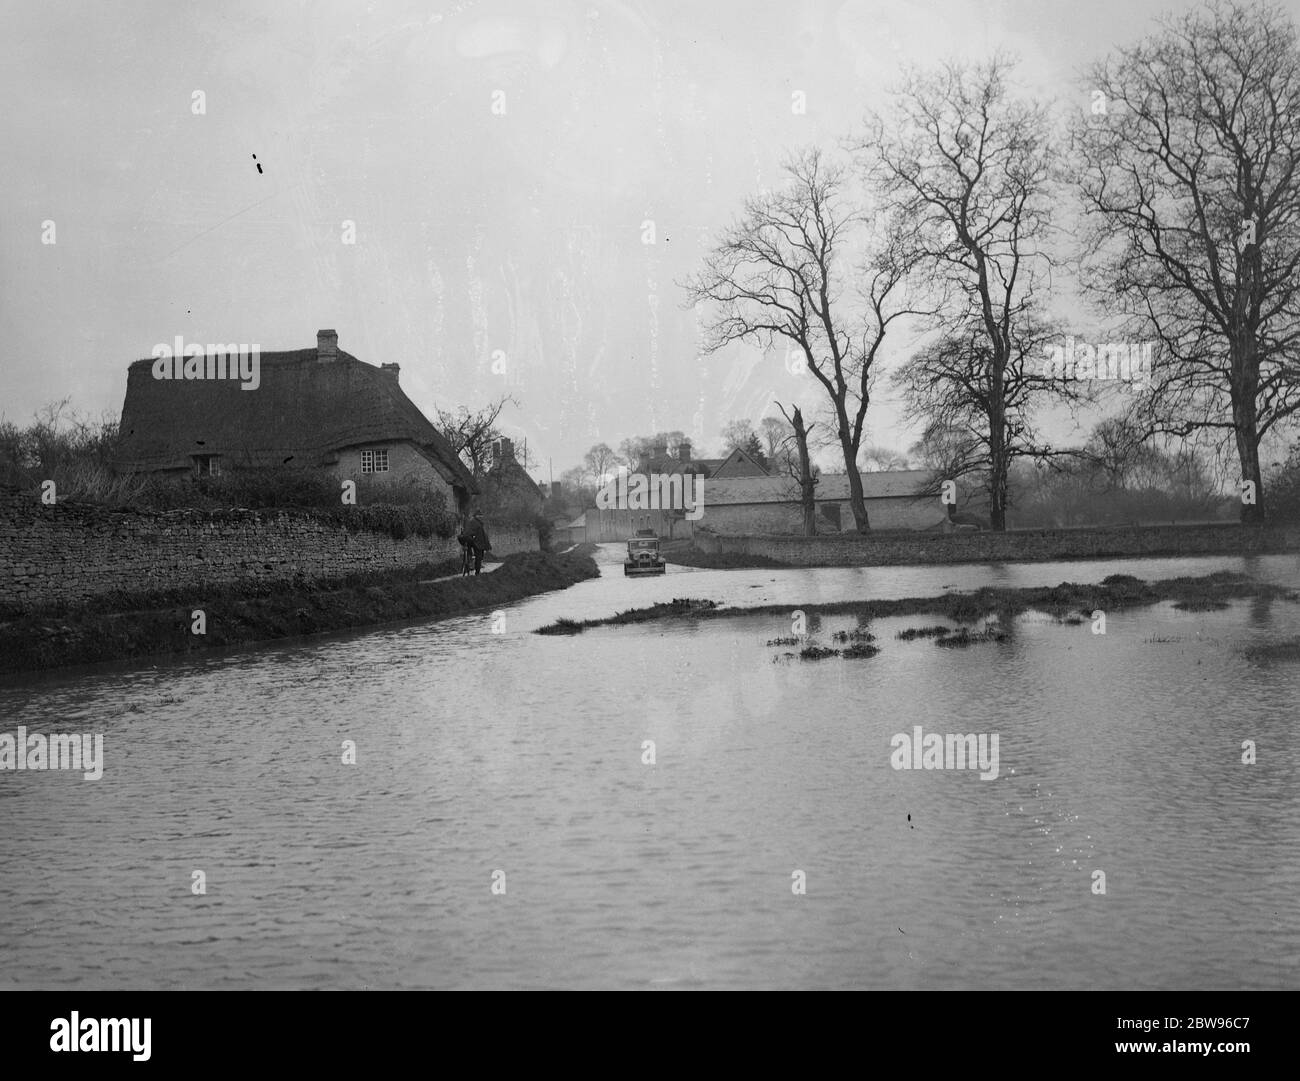 Fiume completamente sommerge strada Oxfordshire. Il fiume Ray ha rotto le sue rive a Islip e completamente sommerso la strada Oxford - Wheatley per diverse centinaia di metri . La strada nuova si trova sotto due piedi di acqua . La strada sommersa a Islip . 3 maggio 1932 Foto Stock